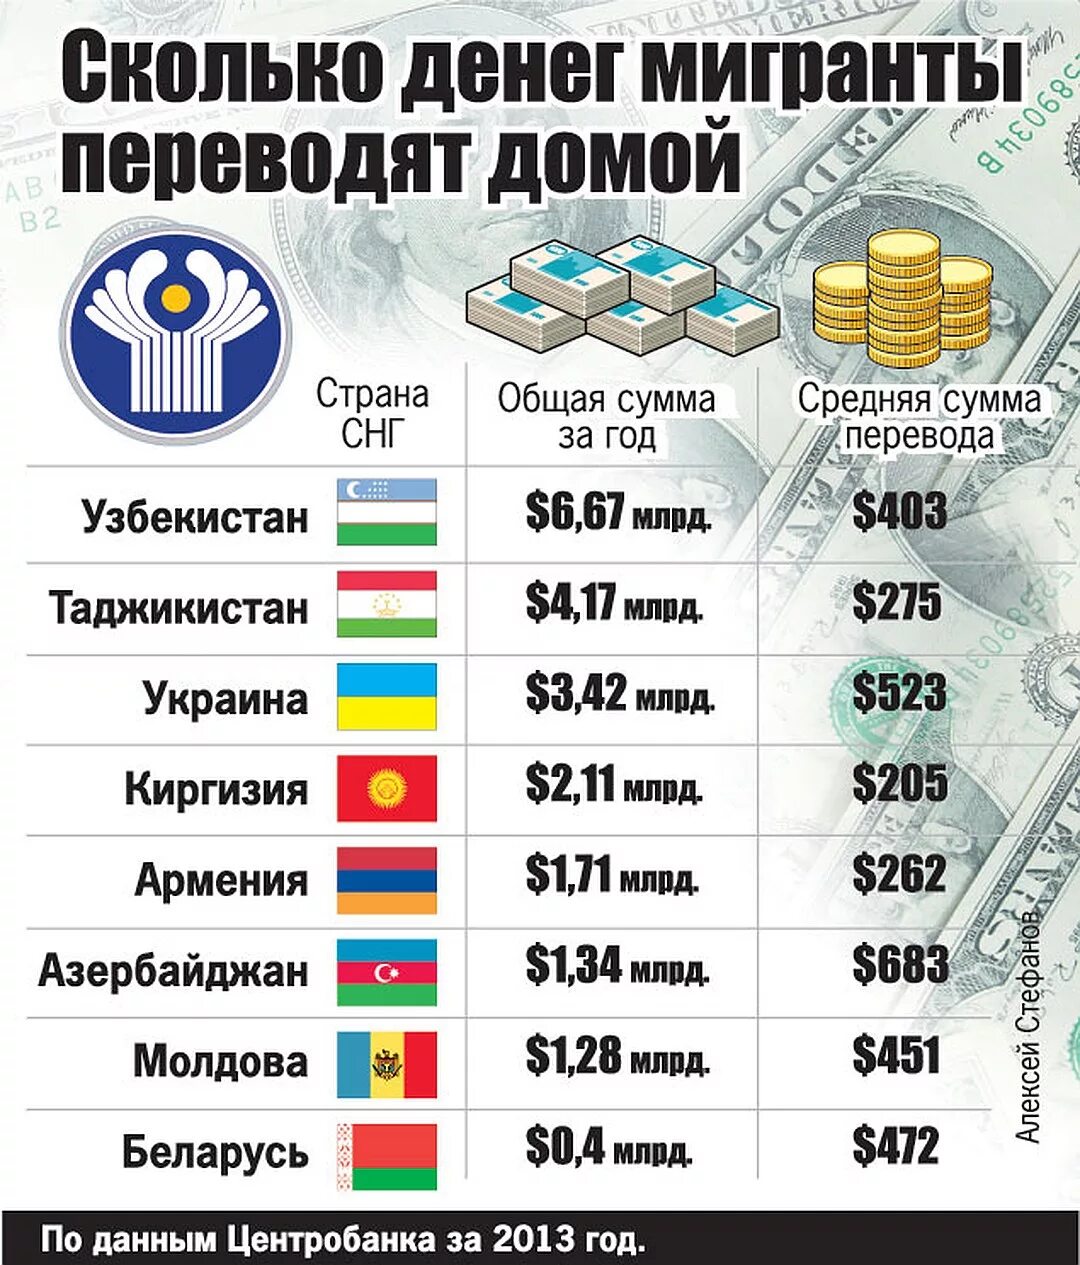 Сколько денег нужно в месяц для жизни. Количество денег в странах. Сколько денег в России. Сколько денег по странам. Сколько в Росси денеиг.